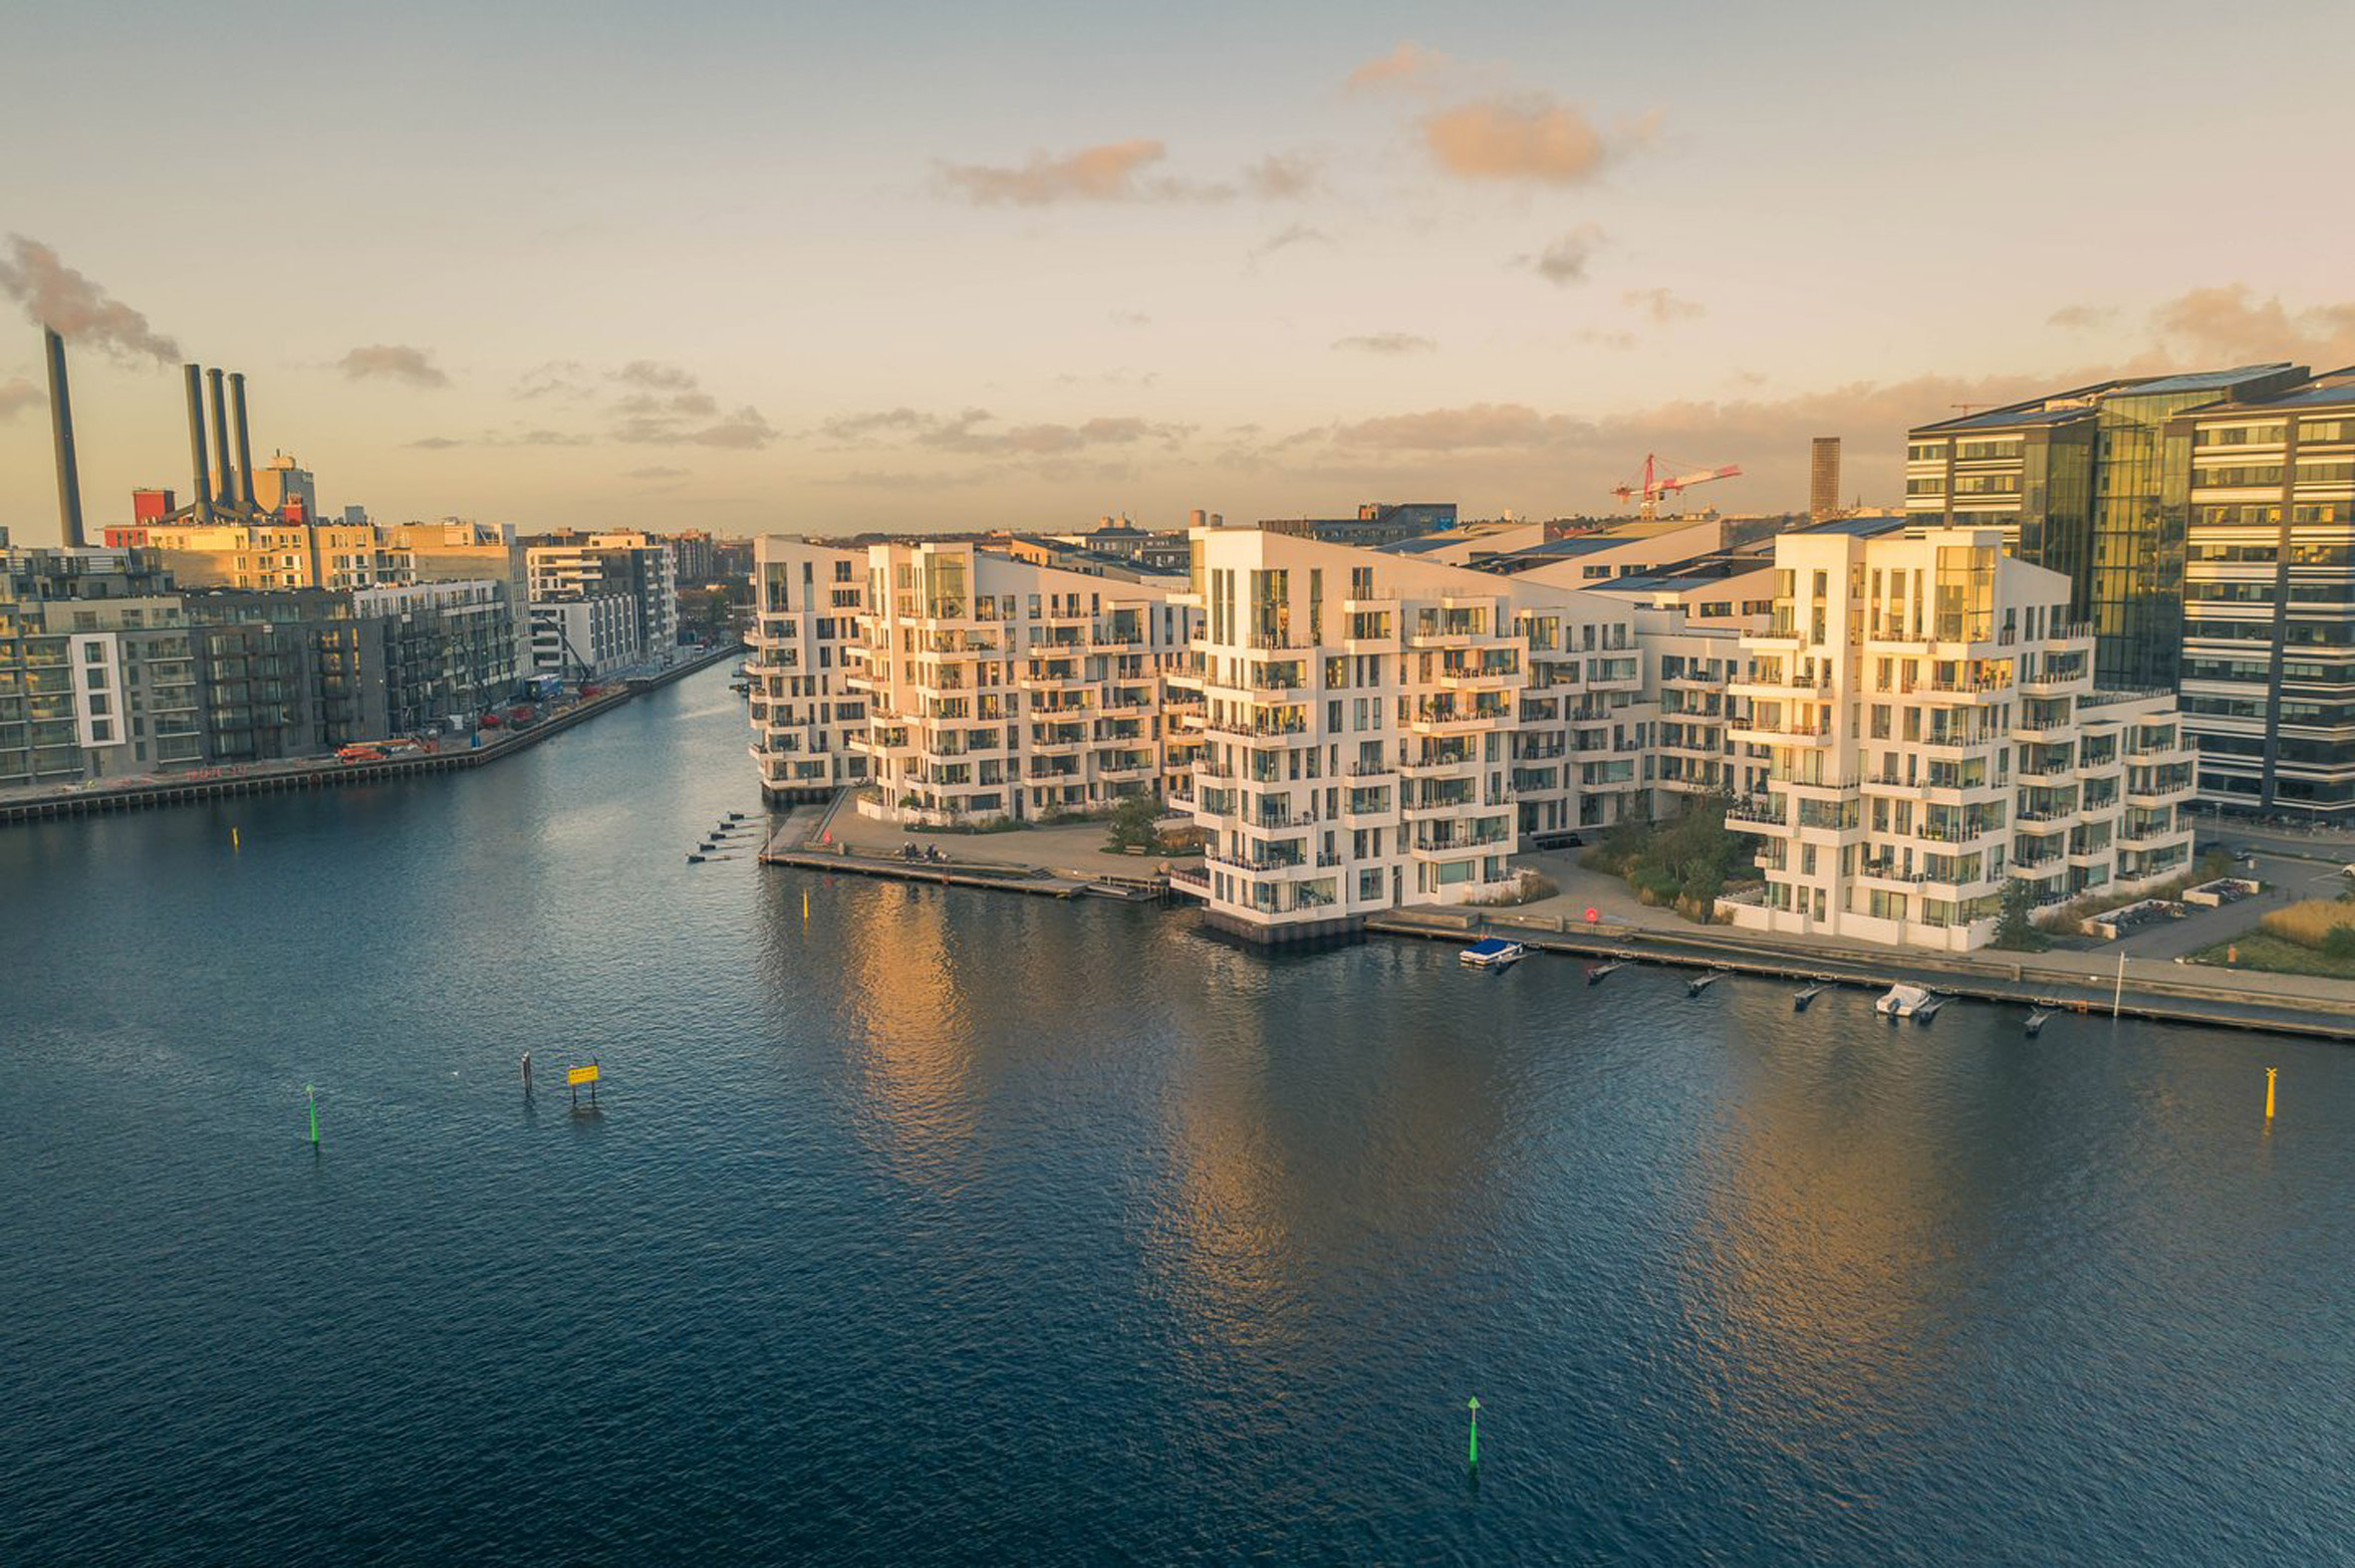 A photograph of Copenhagen's harbour